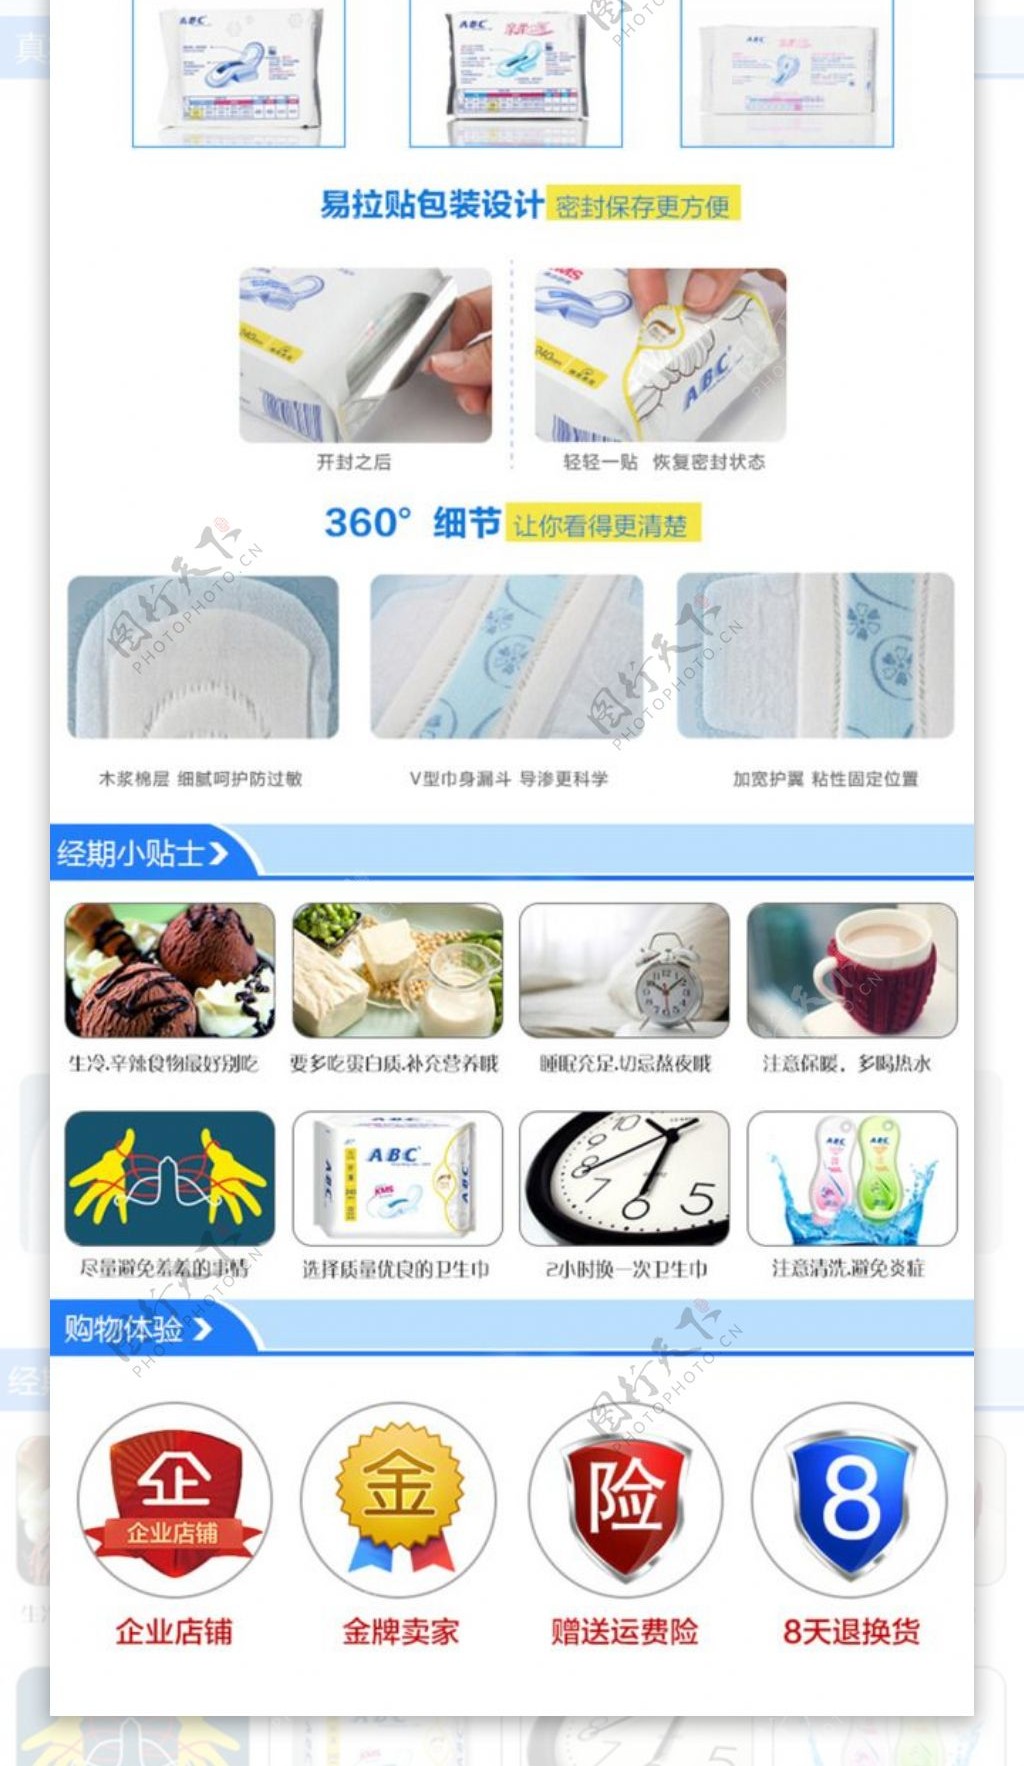 ABC卫生巾淘宝详情页正品质检购物体验